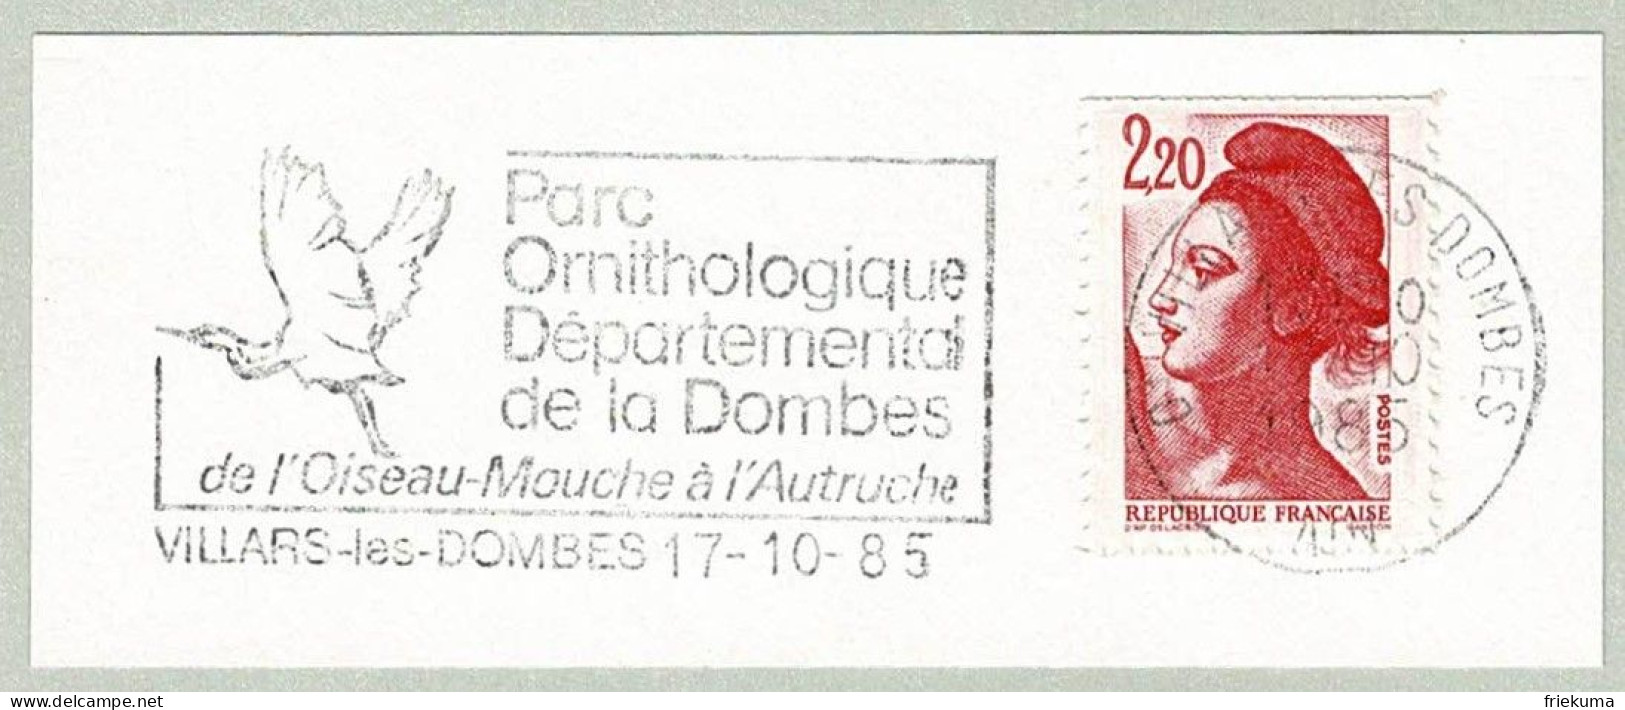 Frankreich / France 1985, Flaggenstempel Villars-les-Dombes, Parc Ornithologique, Strauss / Autruche / Struthio - Ostriches